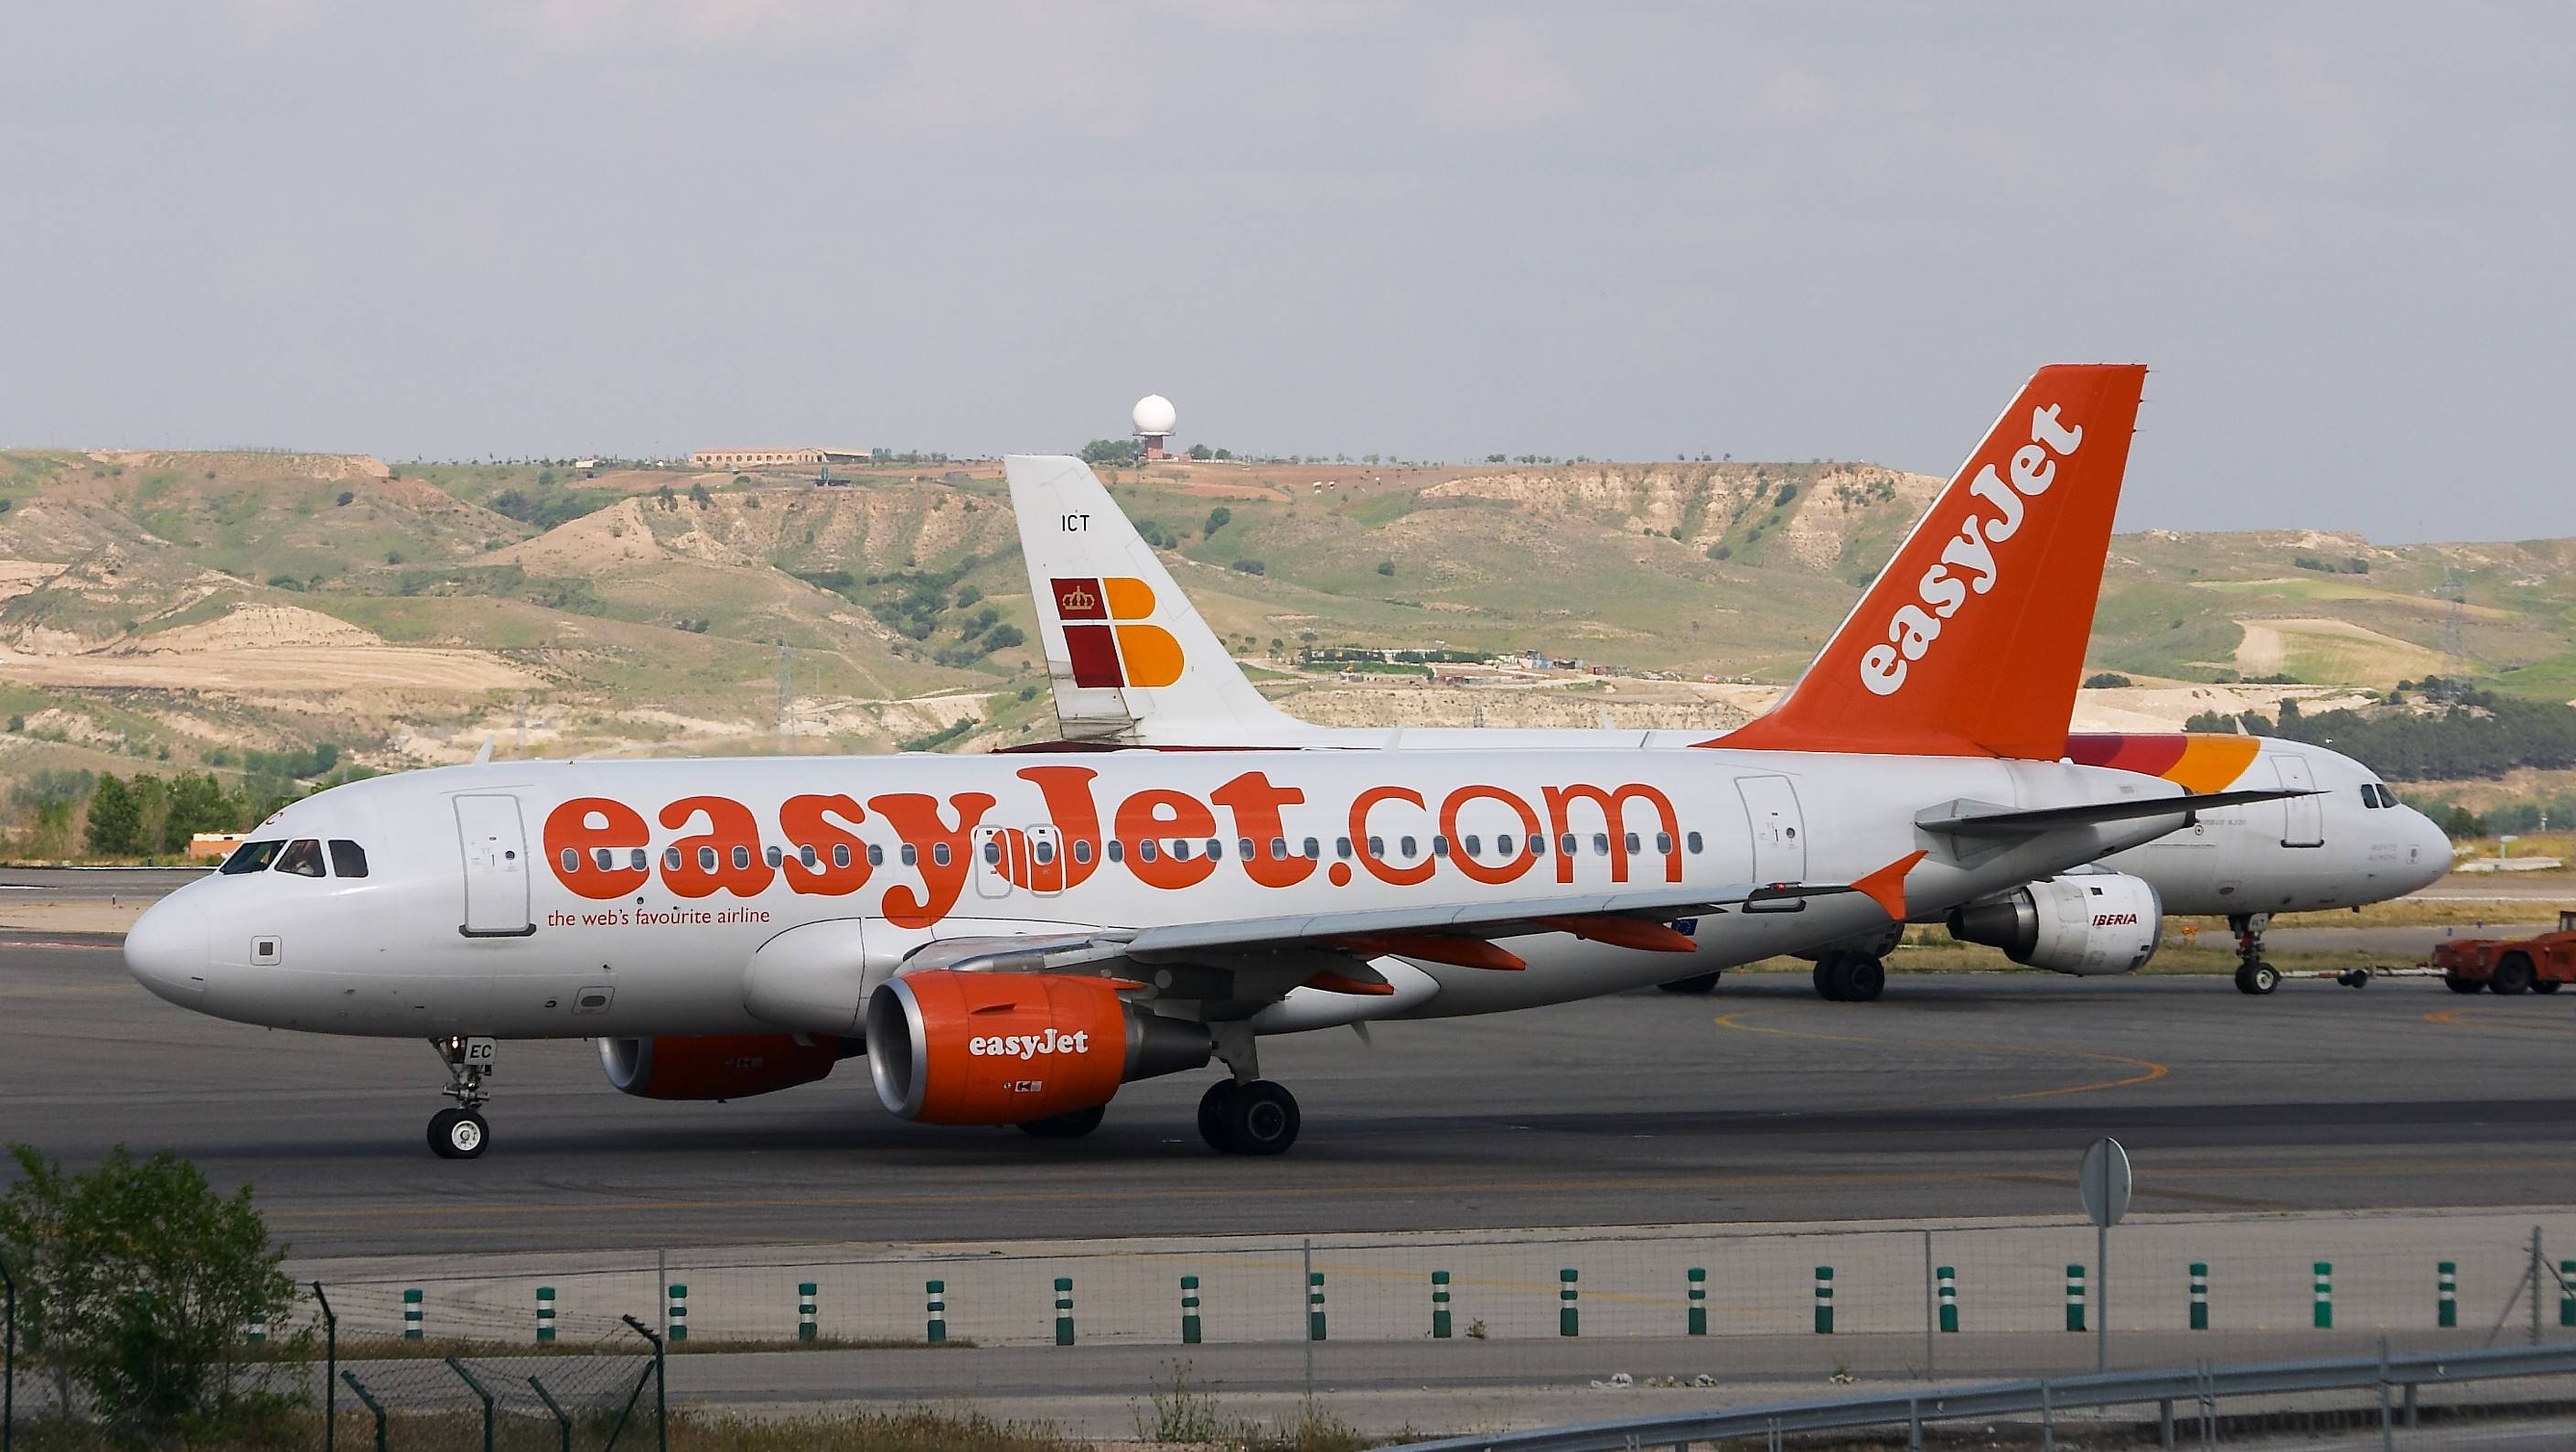 Регистрация на рейс авиакомпании easyjet: пошаговая инструкция
регистрация на рейс авиакомпании easyjet: пошаговая инструкция